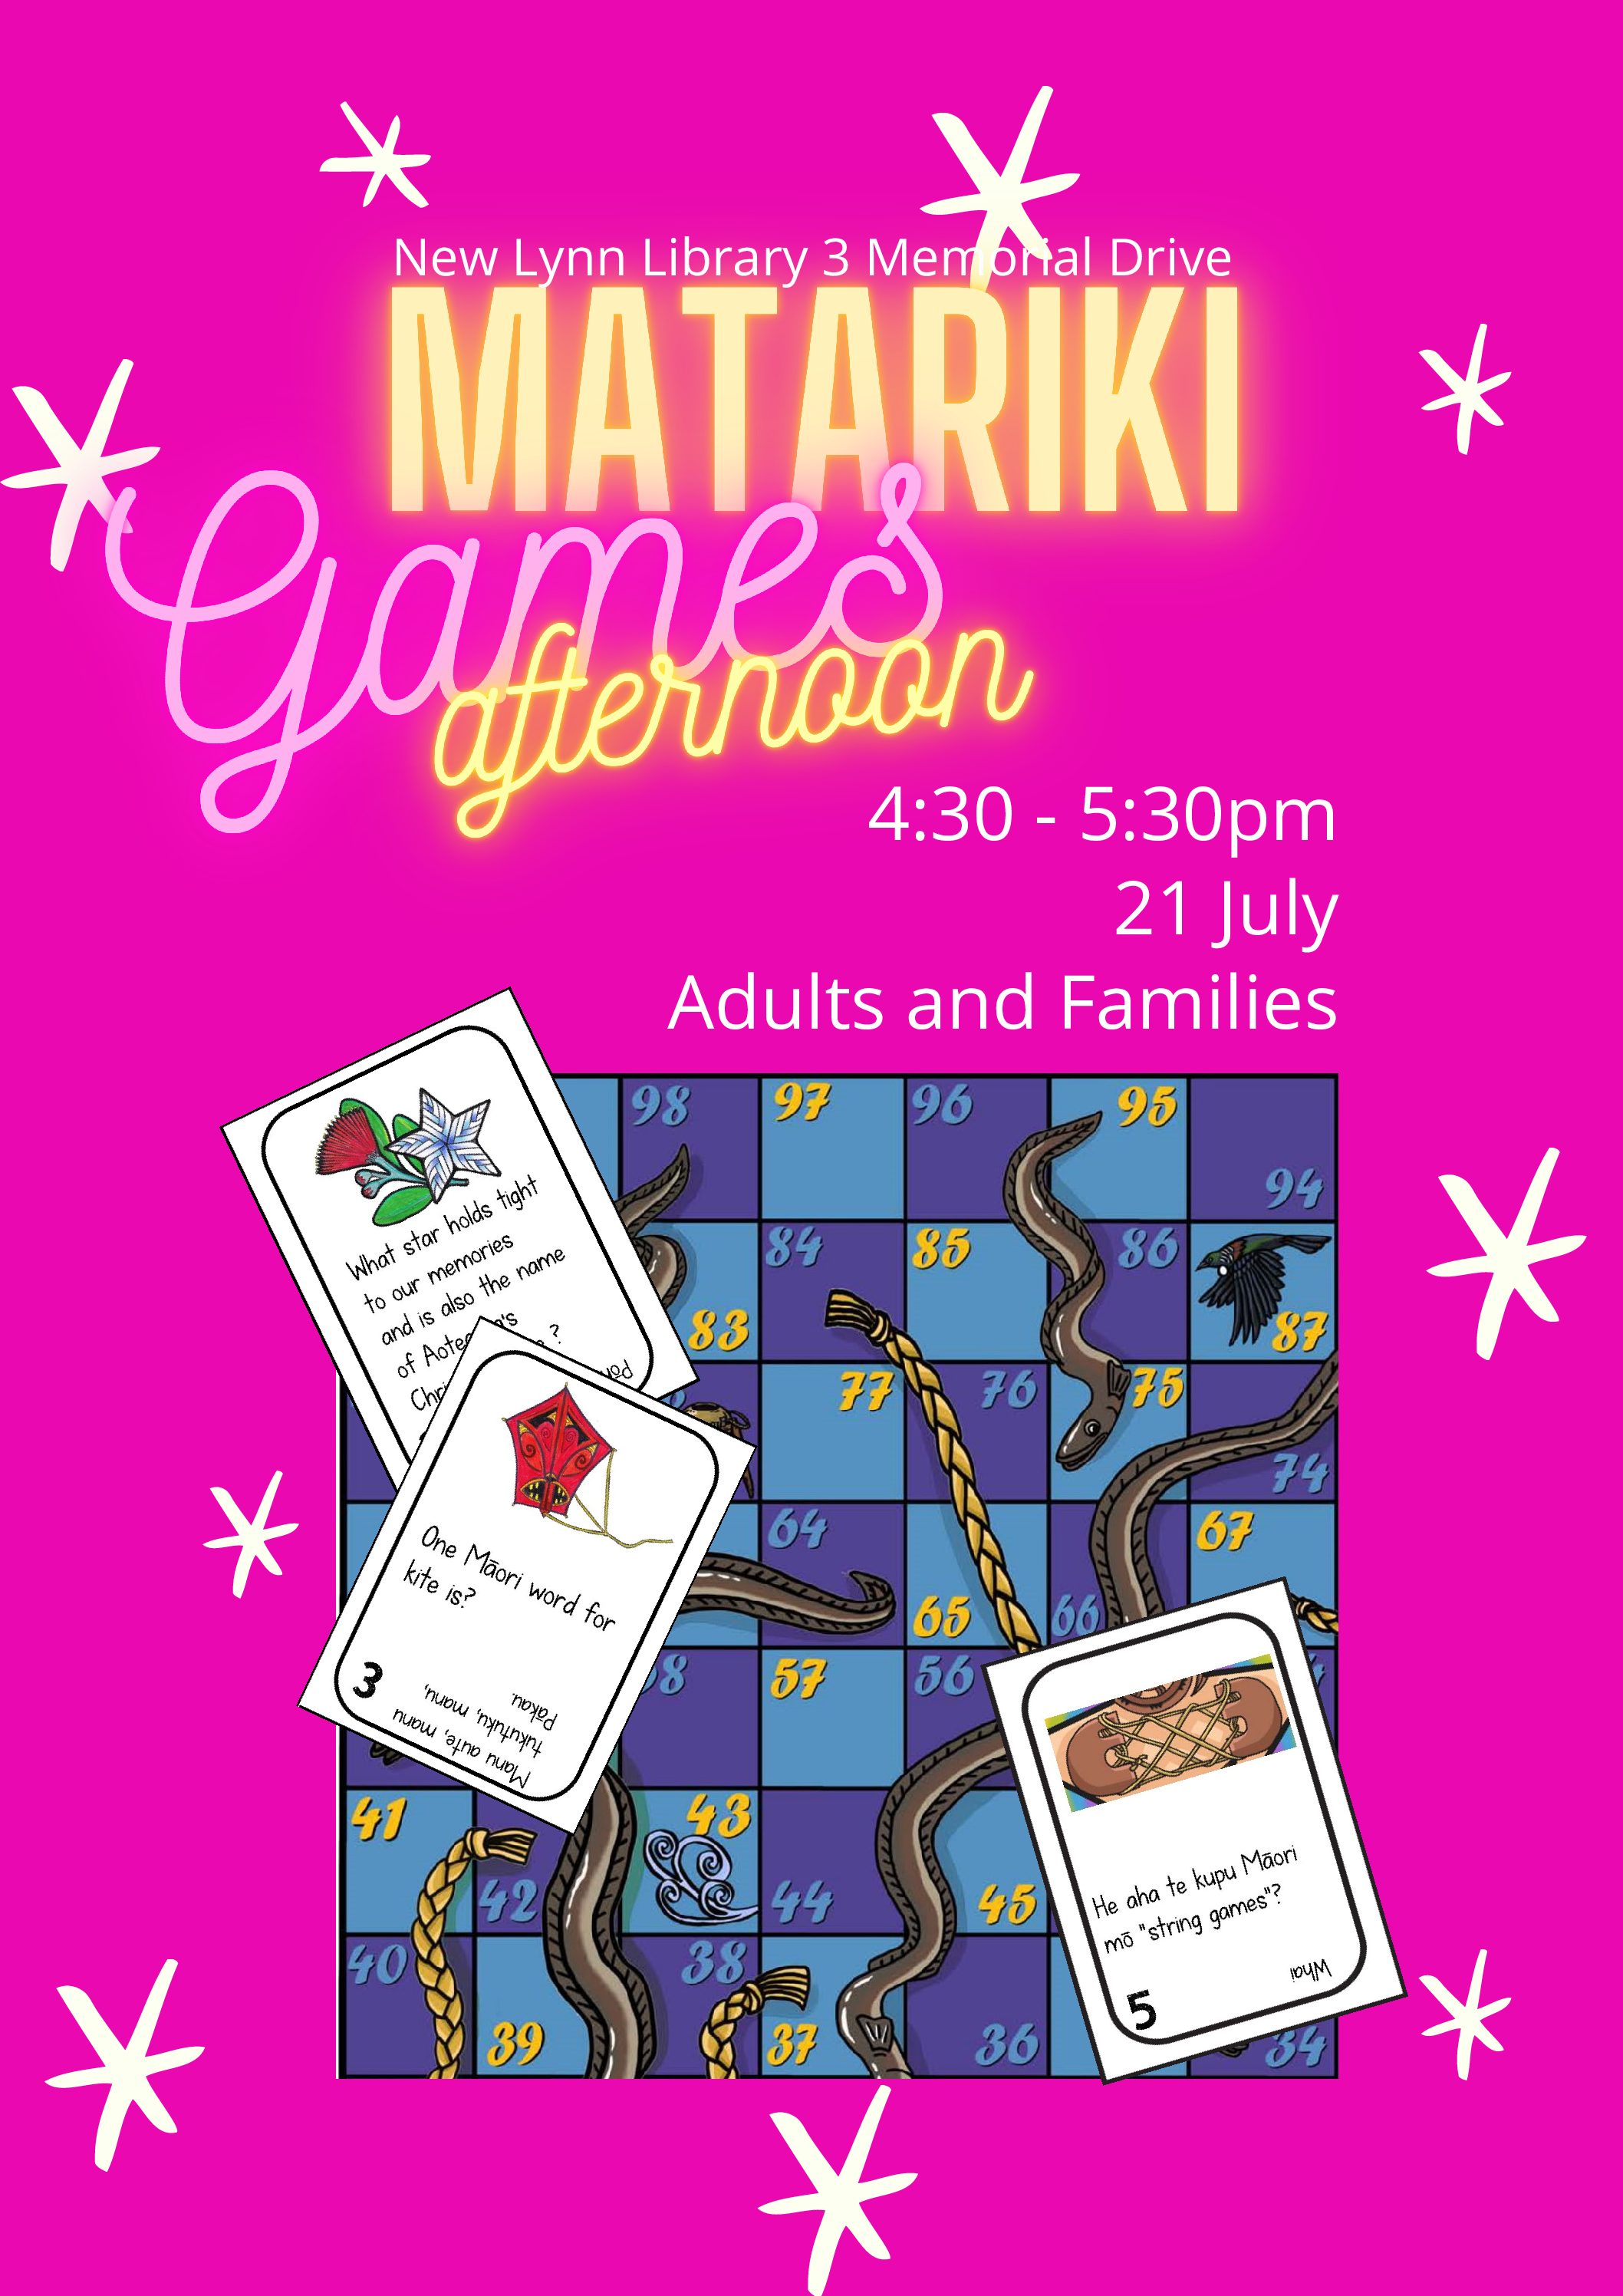 Matariki Games Afternoon – 21 July, 4.30-5.30pm New Lynn Library